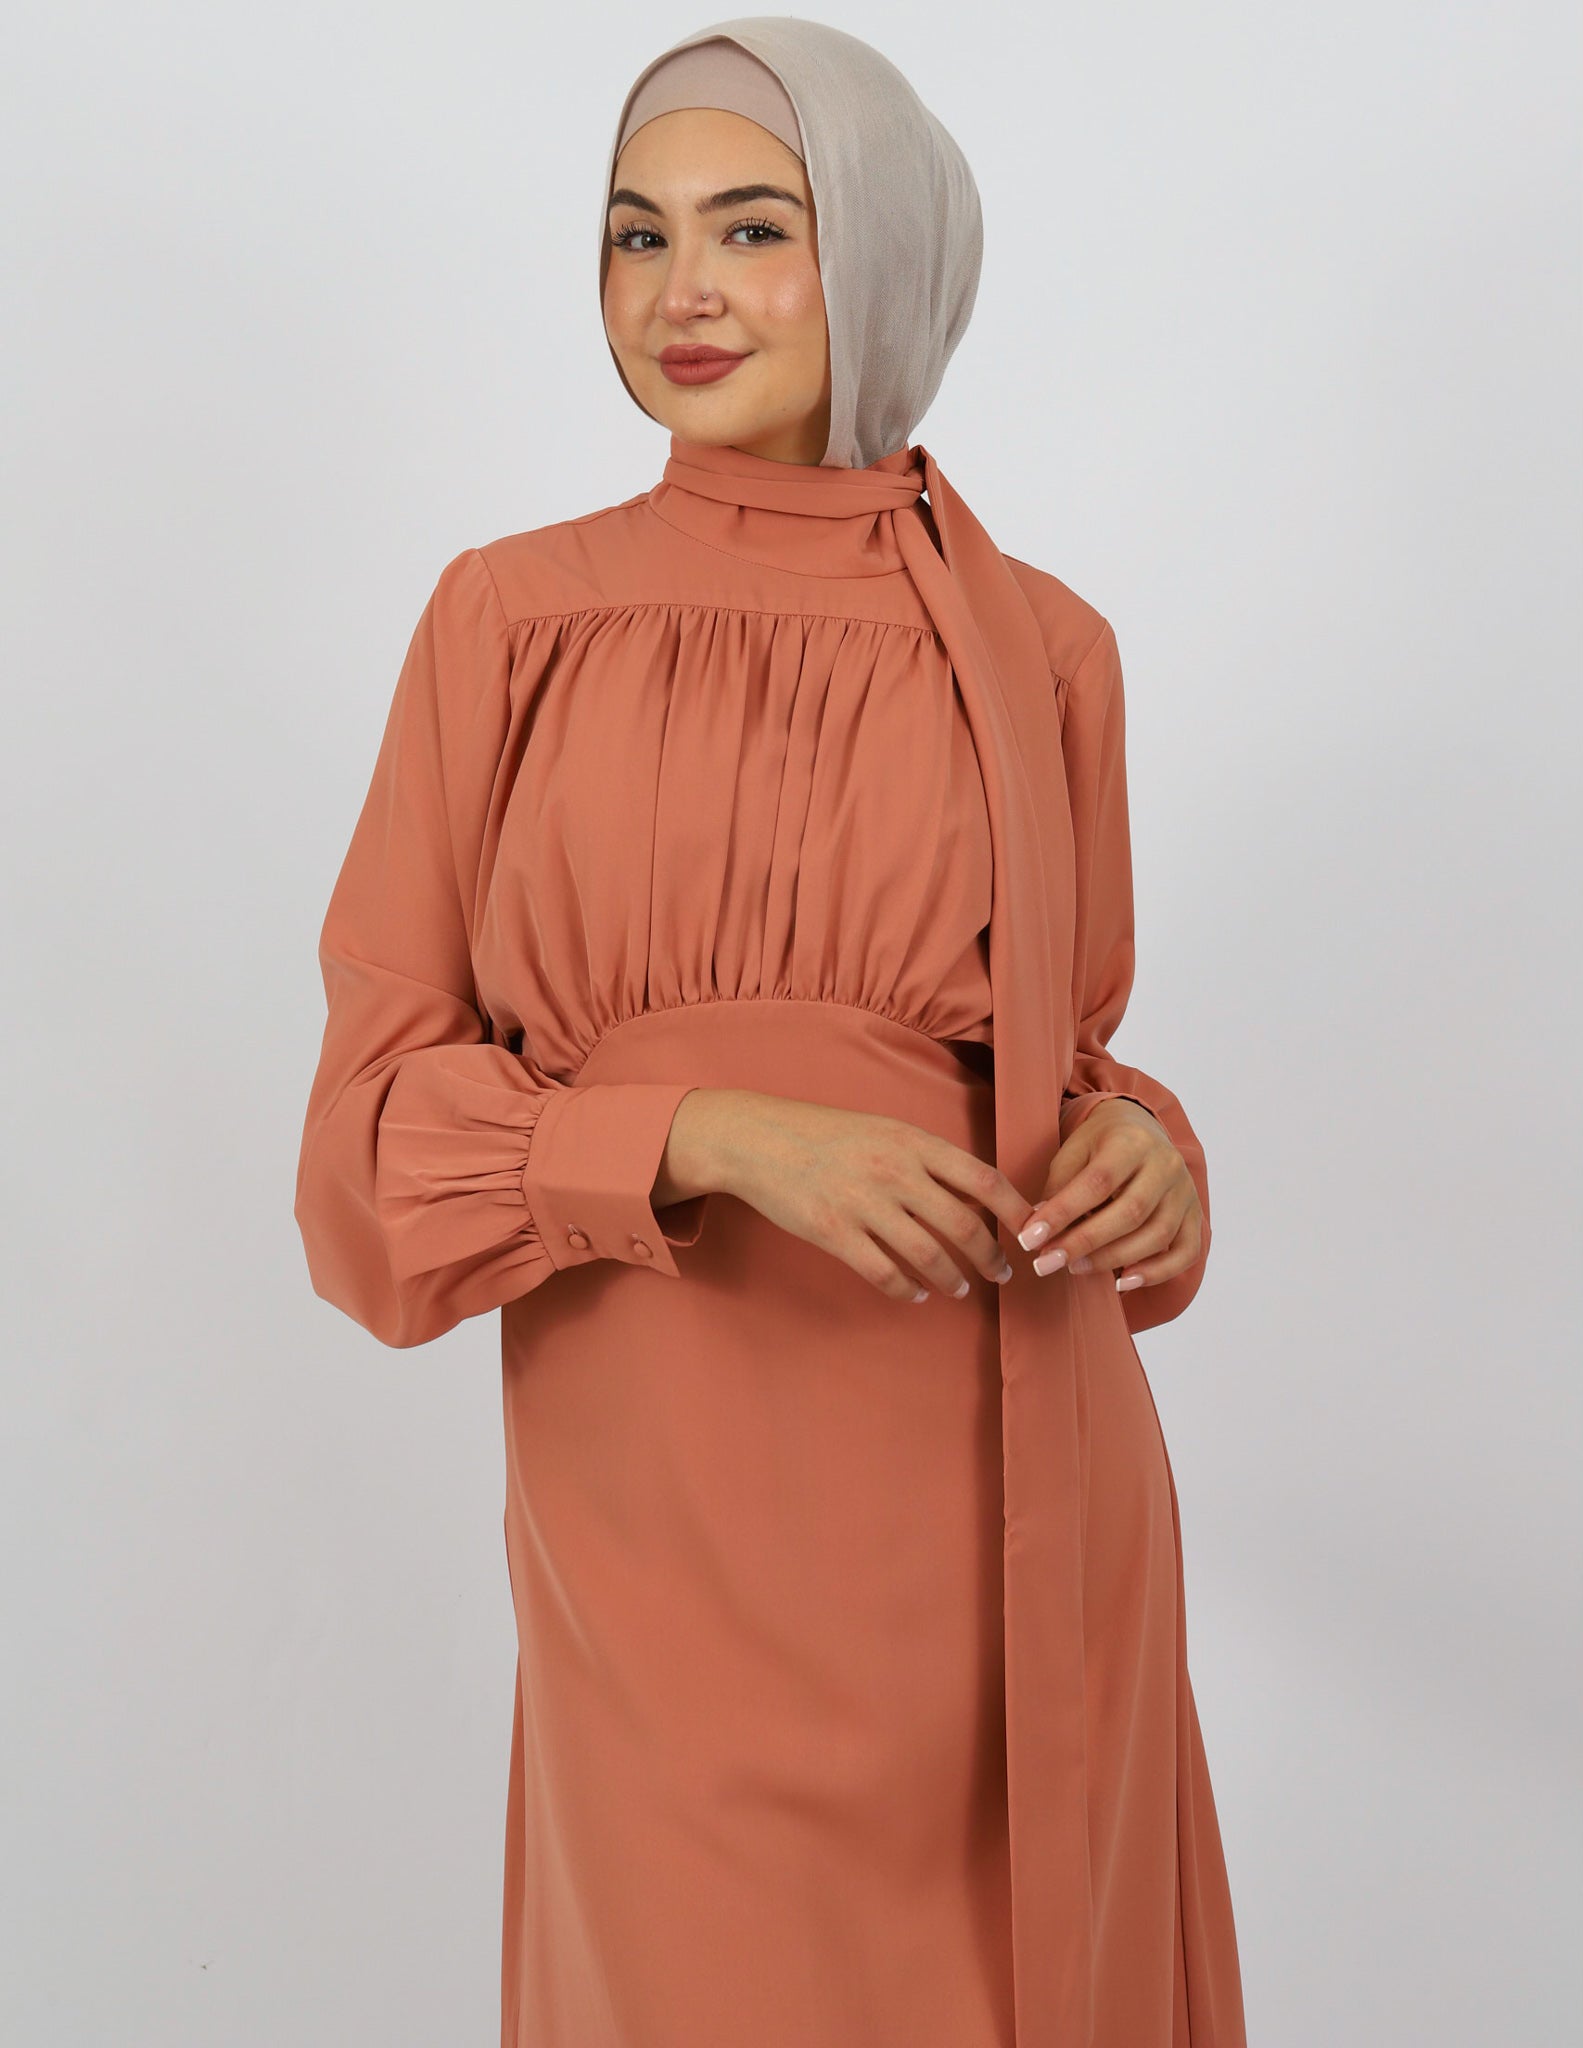 M7711Salmon-dress-abaya